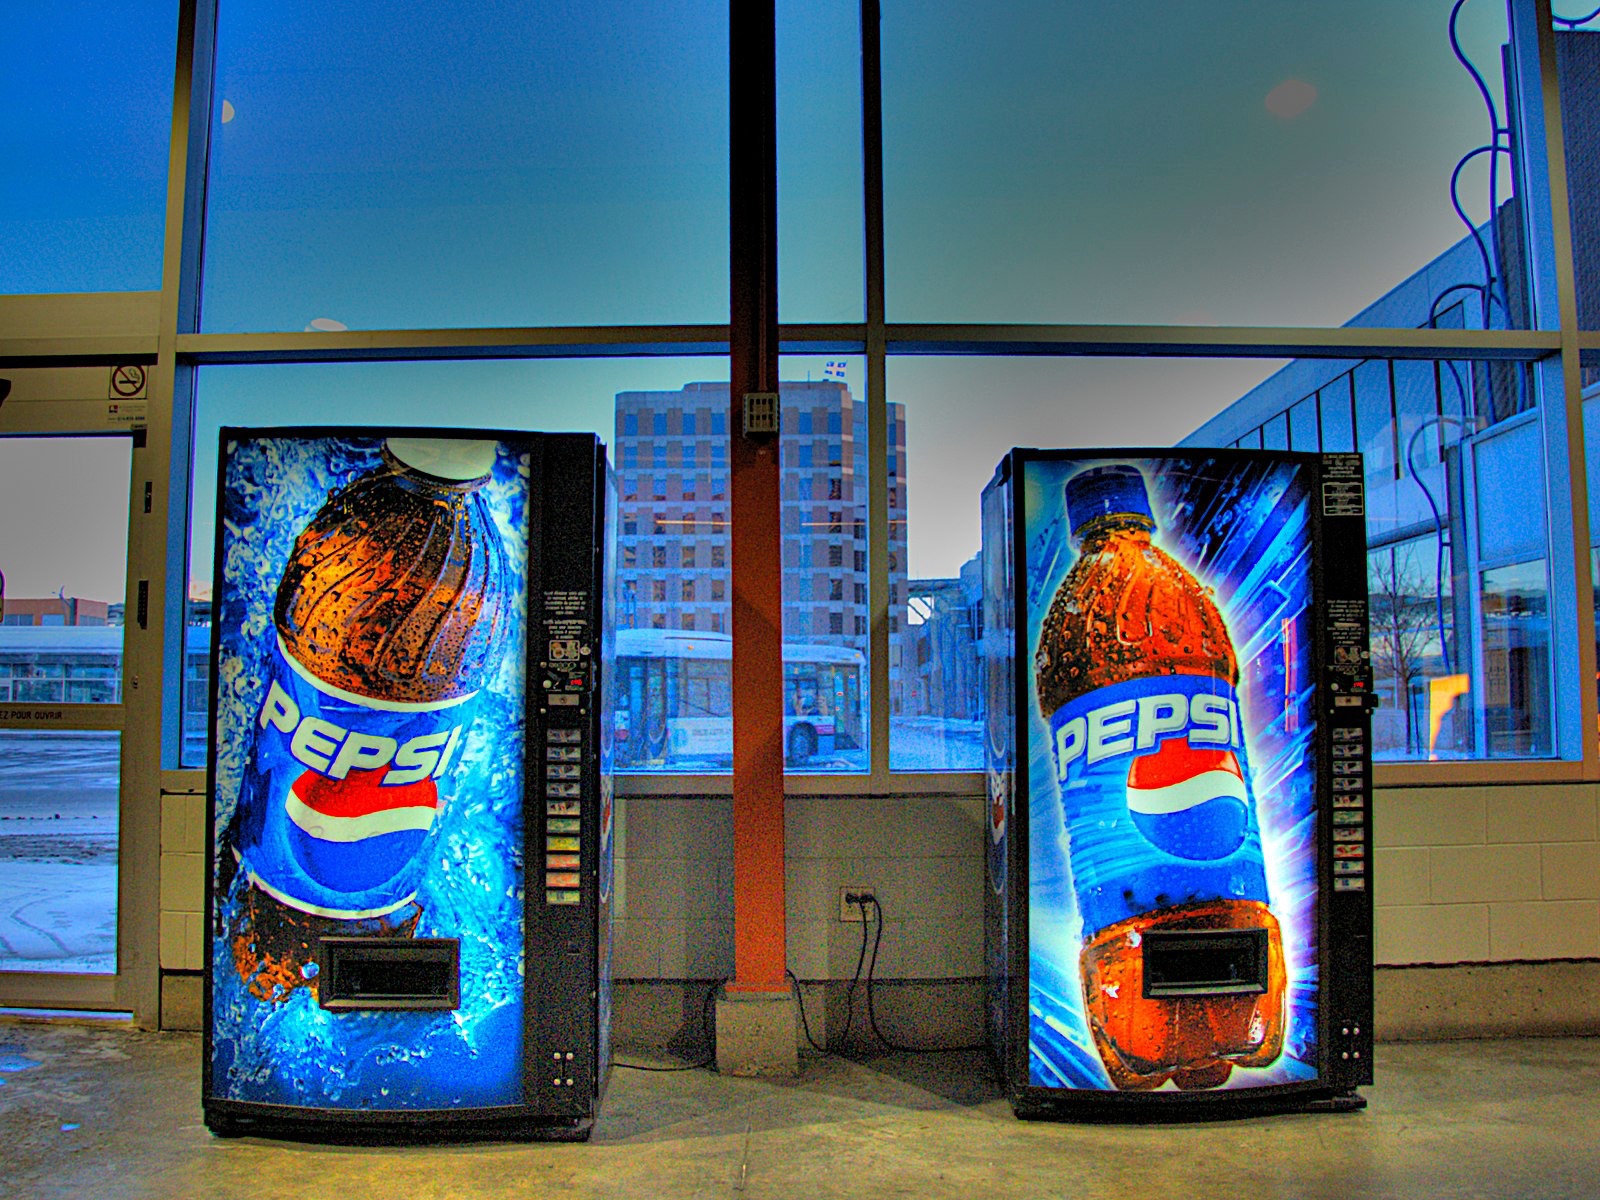 Pepsi machines.